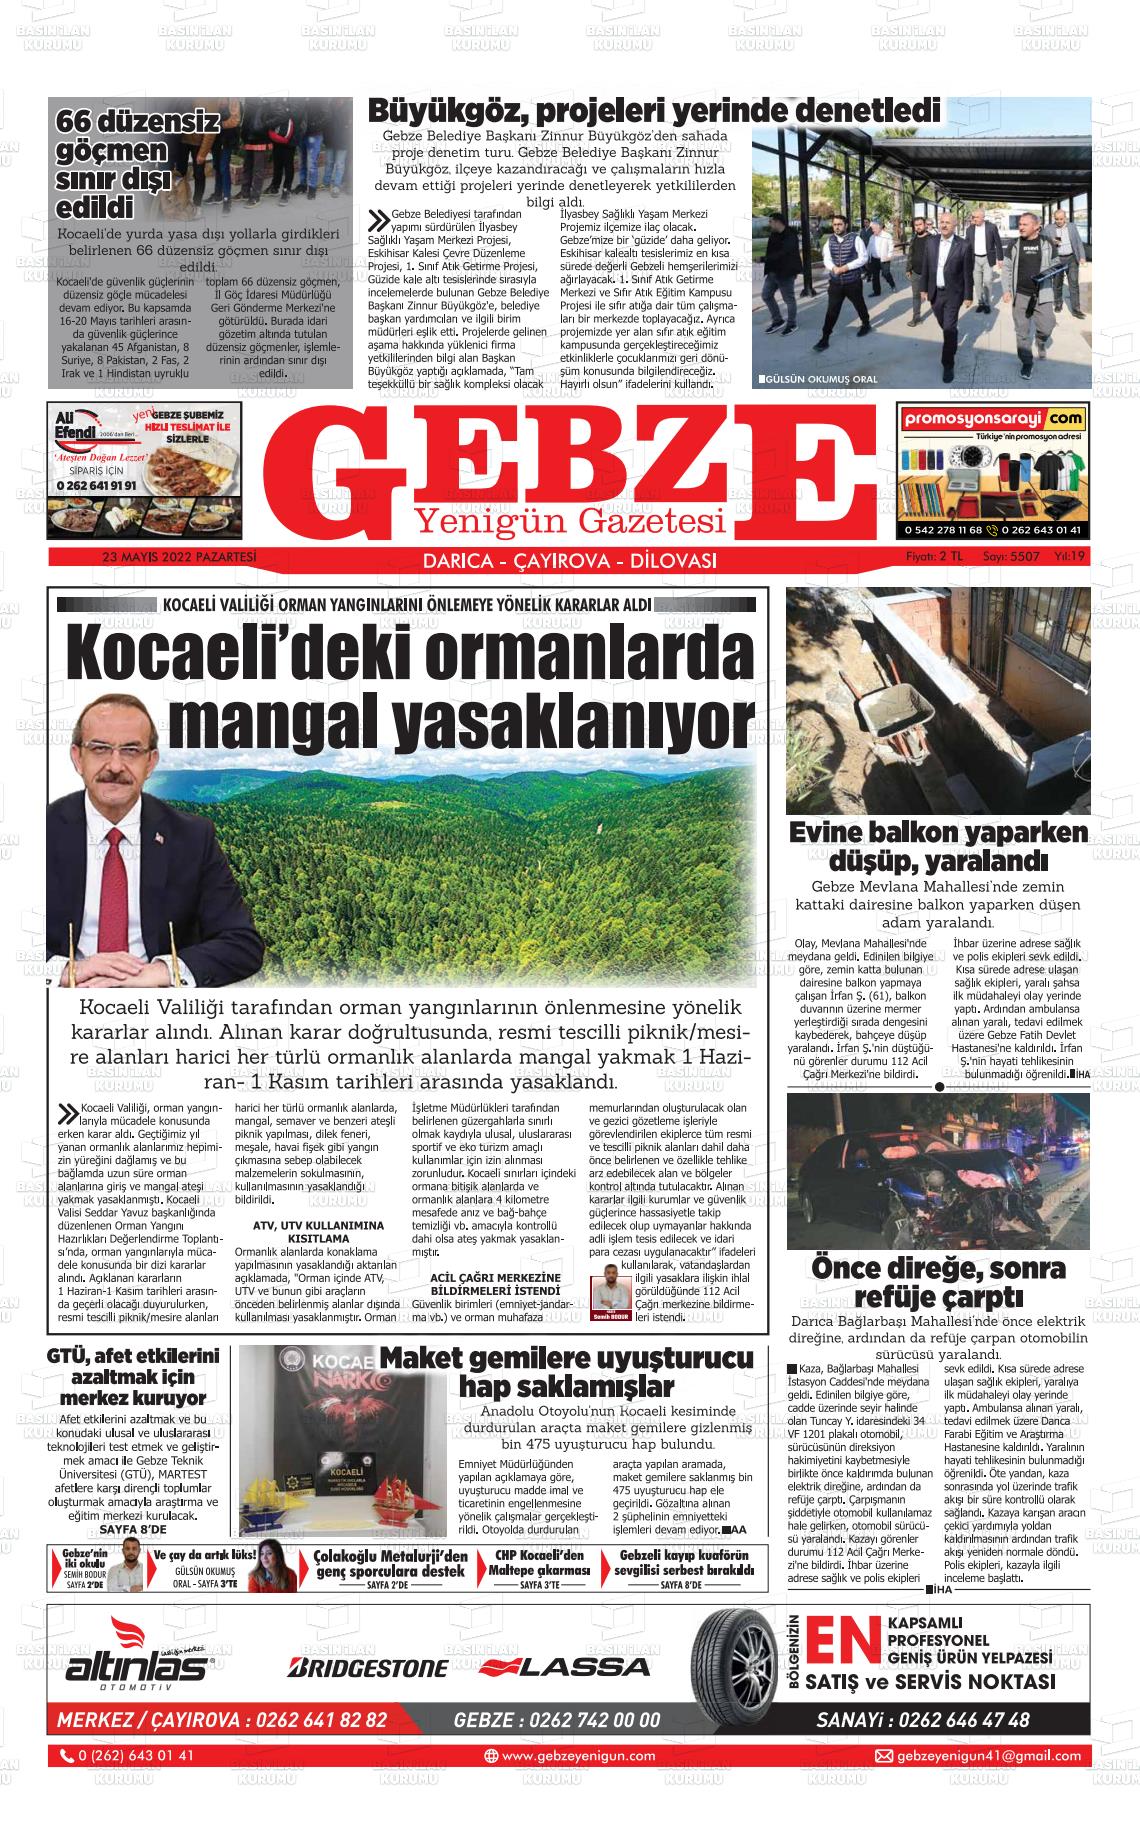 23 Mayıs 2022 Gebze Yenigün Gazete Manşeti